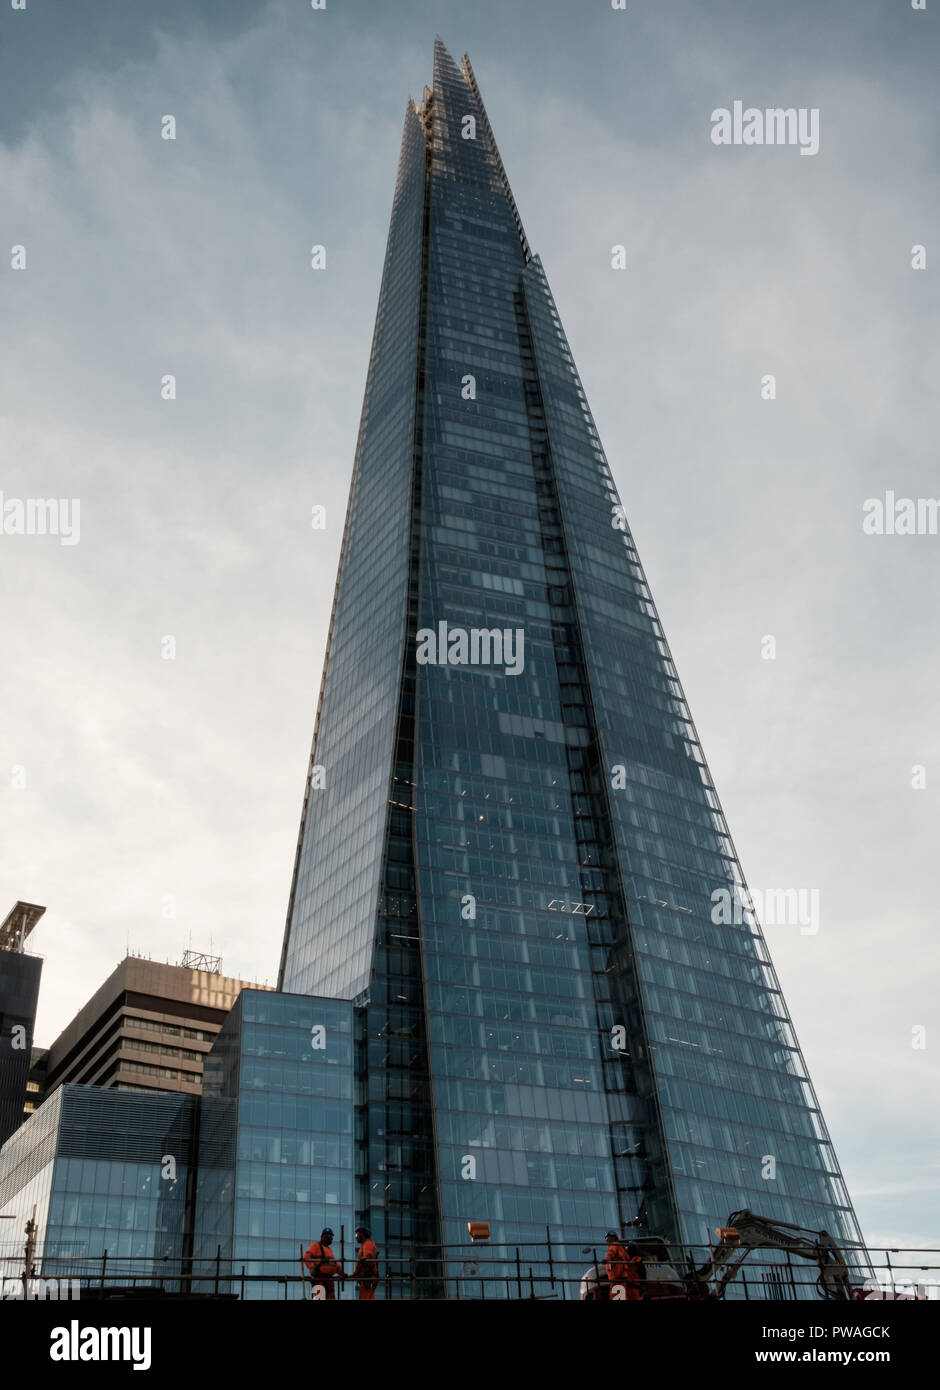 Le Shard, le plus haut bâtiment de l'Europe de l'Ouest, à l'allure d'un tesson de verre, avec les travailleurs de la construction au bas premier plan. copie espace, portrait. Banque D'Images